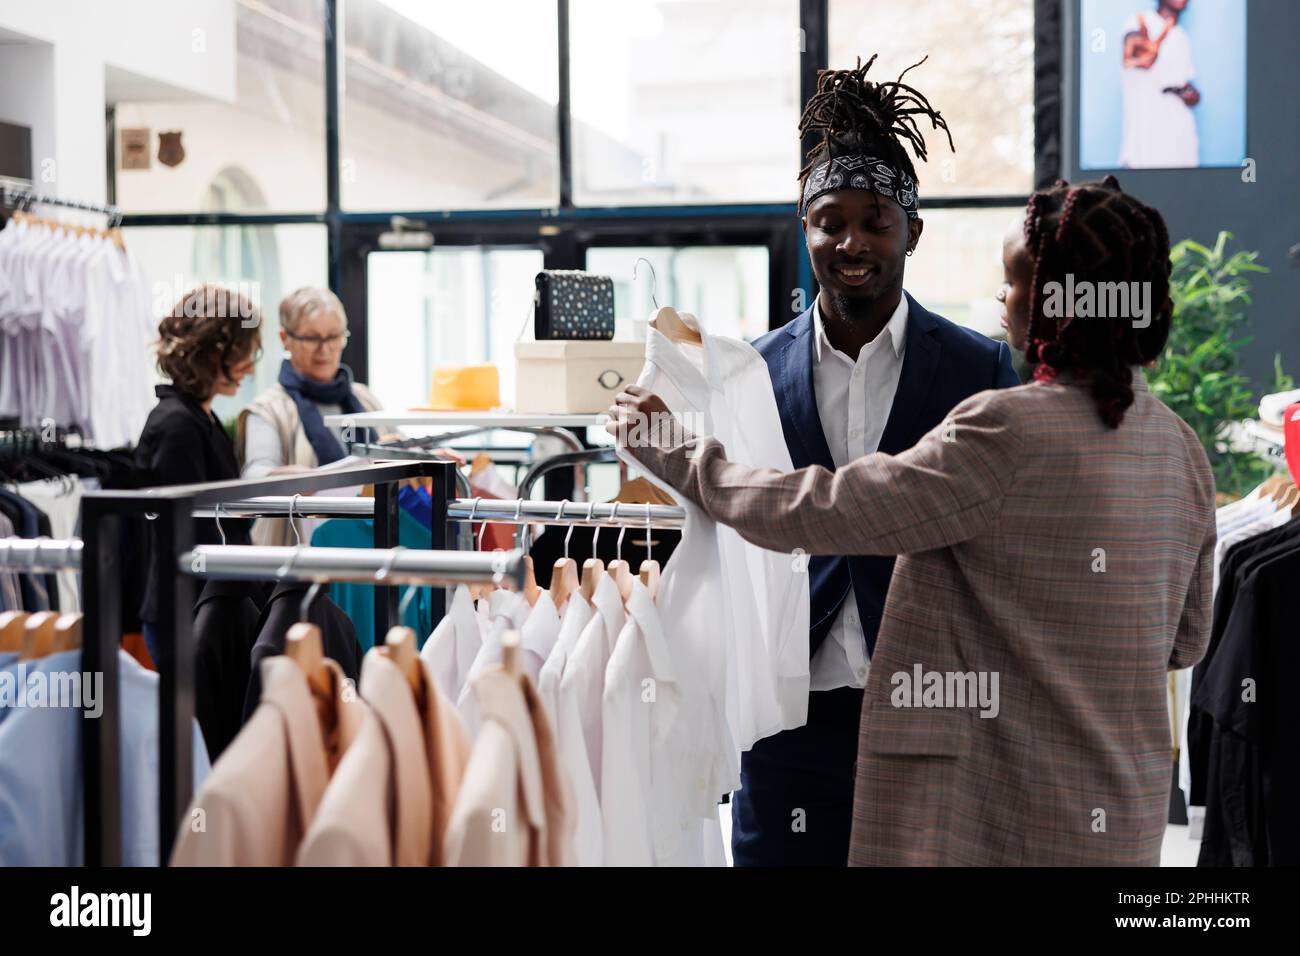 Mitarbeiter im Ausstellungsraum hilft afroamerikanischen Kunden bei der Auswahl des weißen Hemds während der kommerziellen Aktivitäten. Eleganter Kunde, der modische Kleidung im Einkaufszentrum kauft. Modekonzept Stockfoto